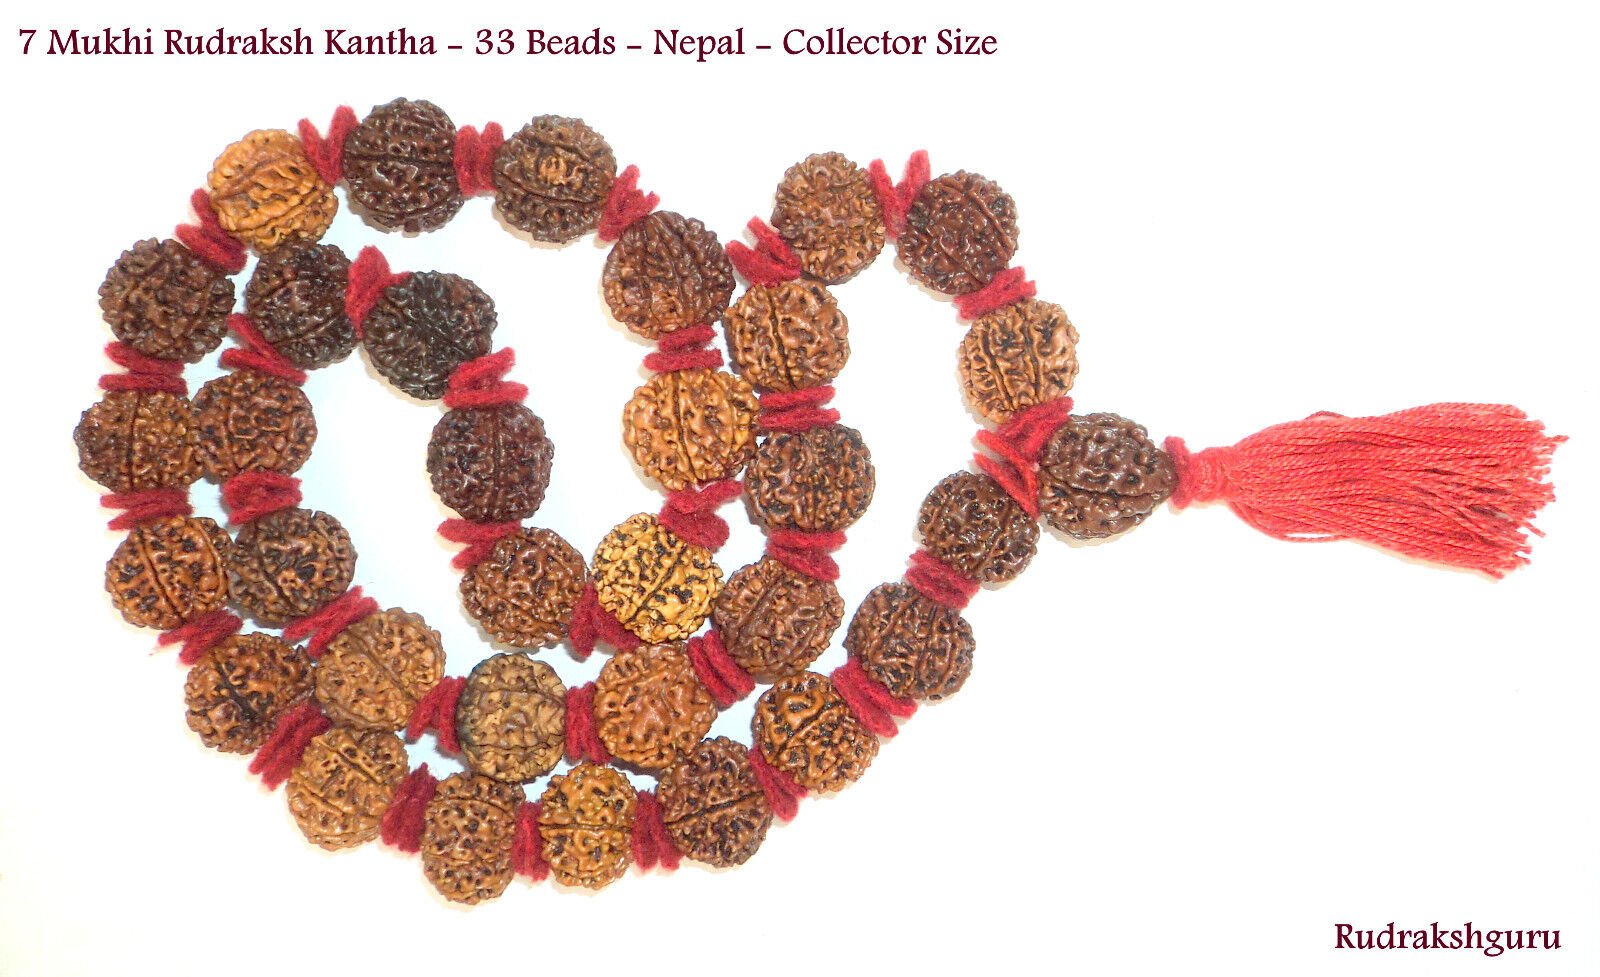 7 Mukhi Rudraksh Kantha / MahaLaxmi Mala - 33 bead - Nepal - Collector Size